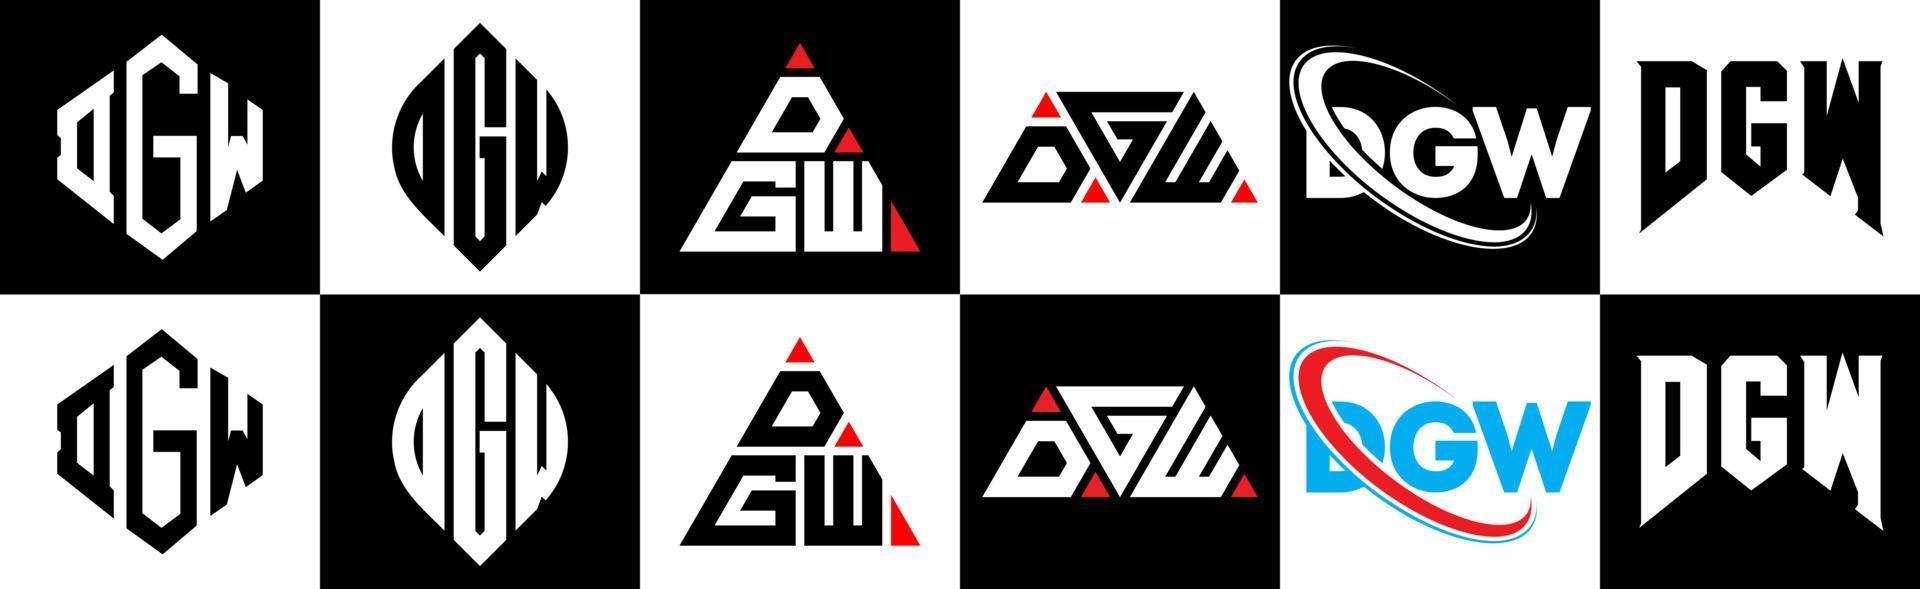 création de logo de lettre dgw en six styles. polygone dgw, cercle, triangle, hexagone, style plat et simple avec logo de lettre de variation de couleur noir et blanc dans un plan de travail. dgw logo minimaliste et classique vecteur